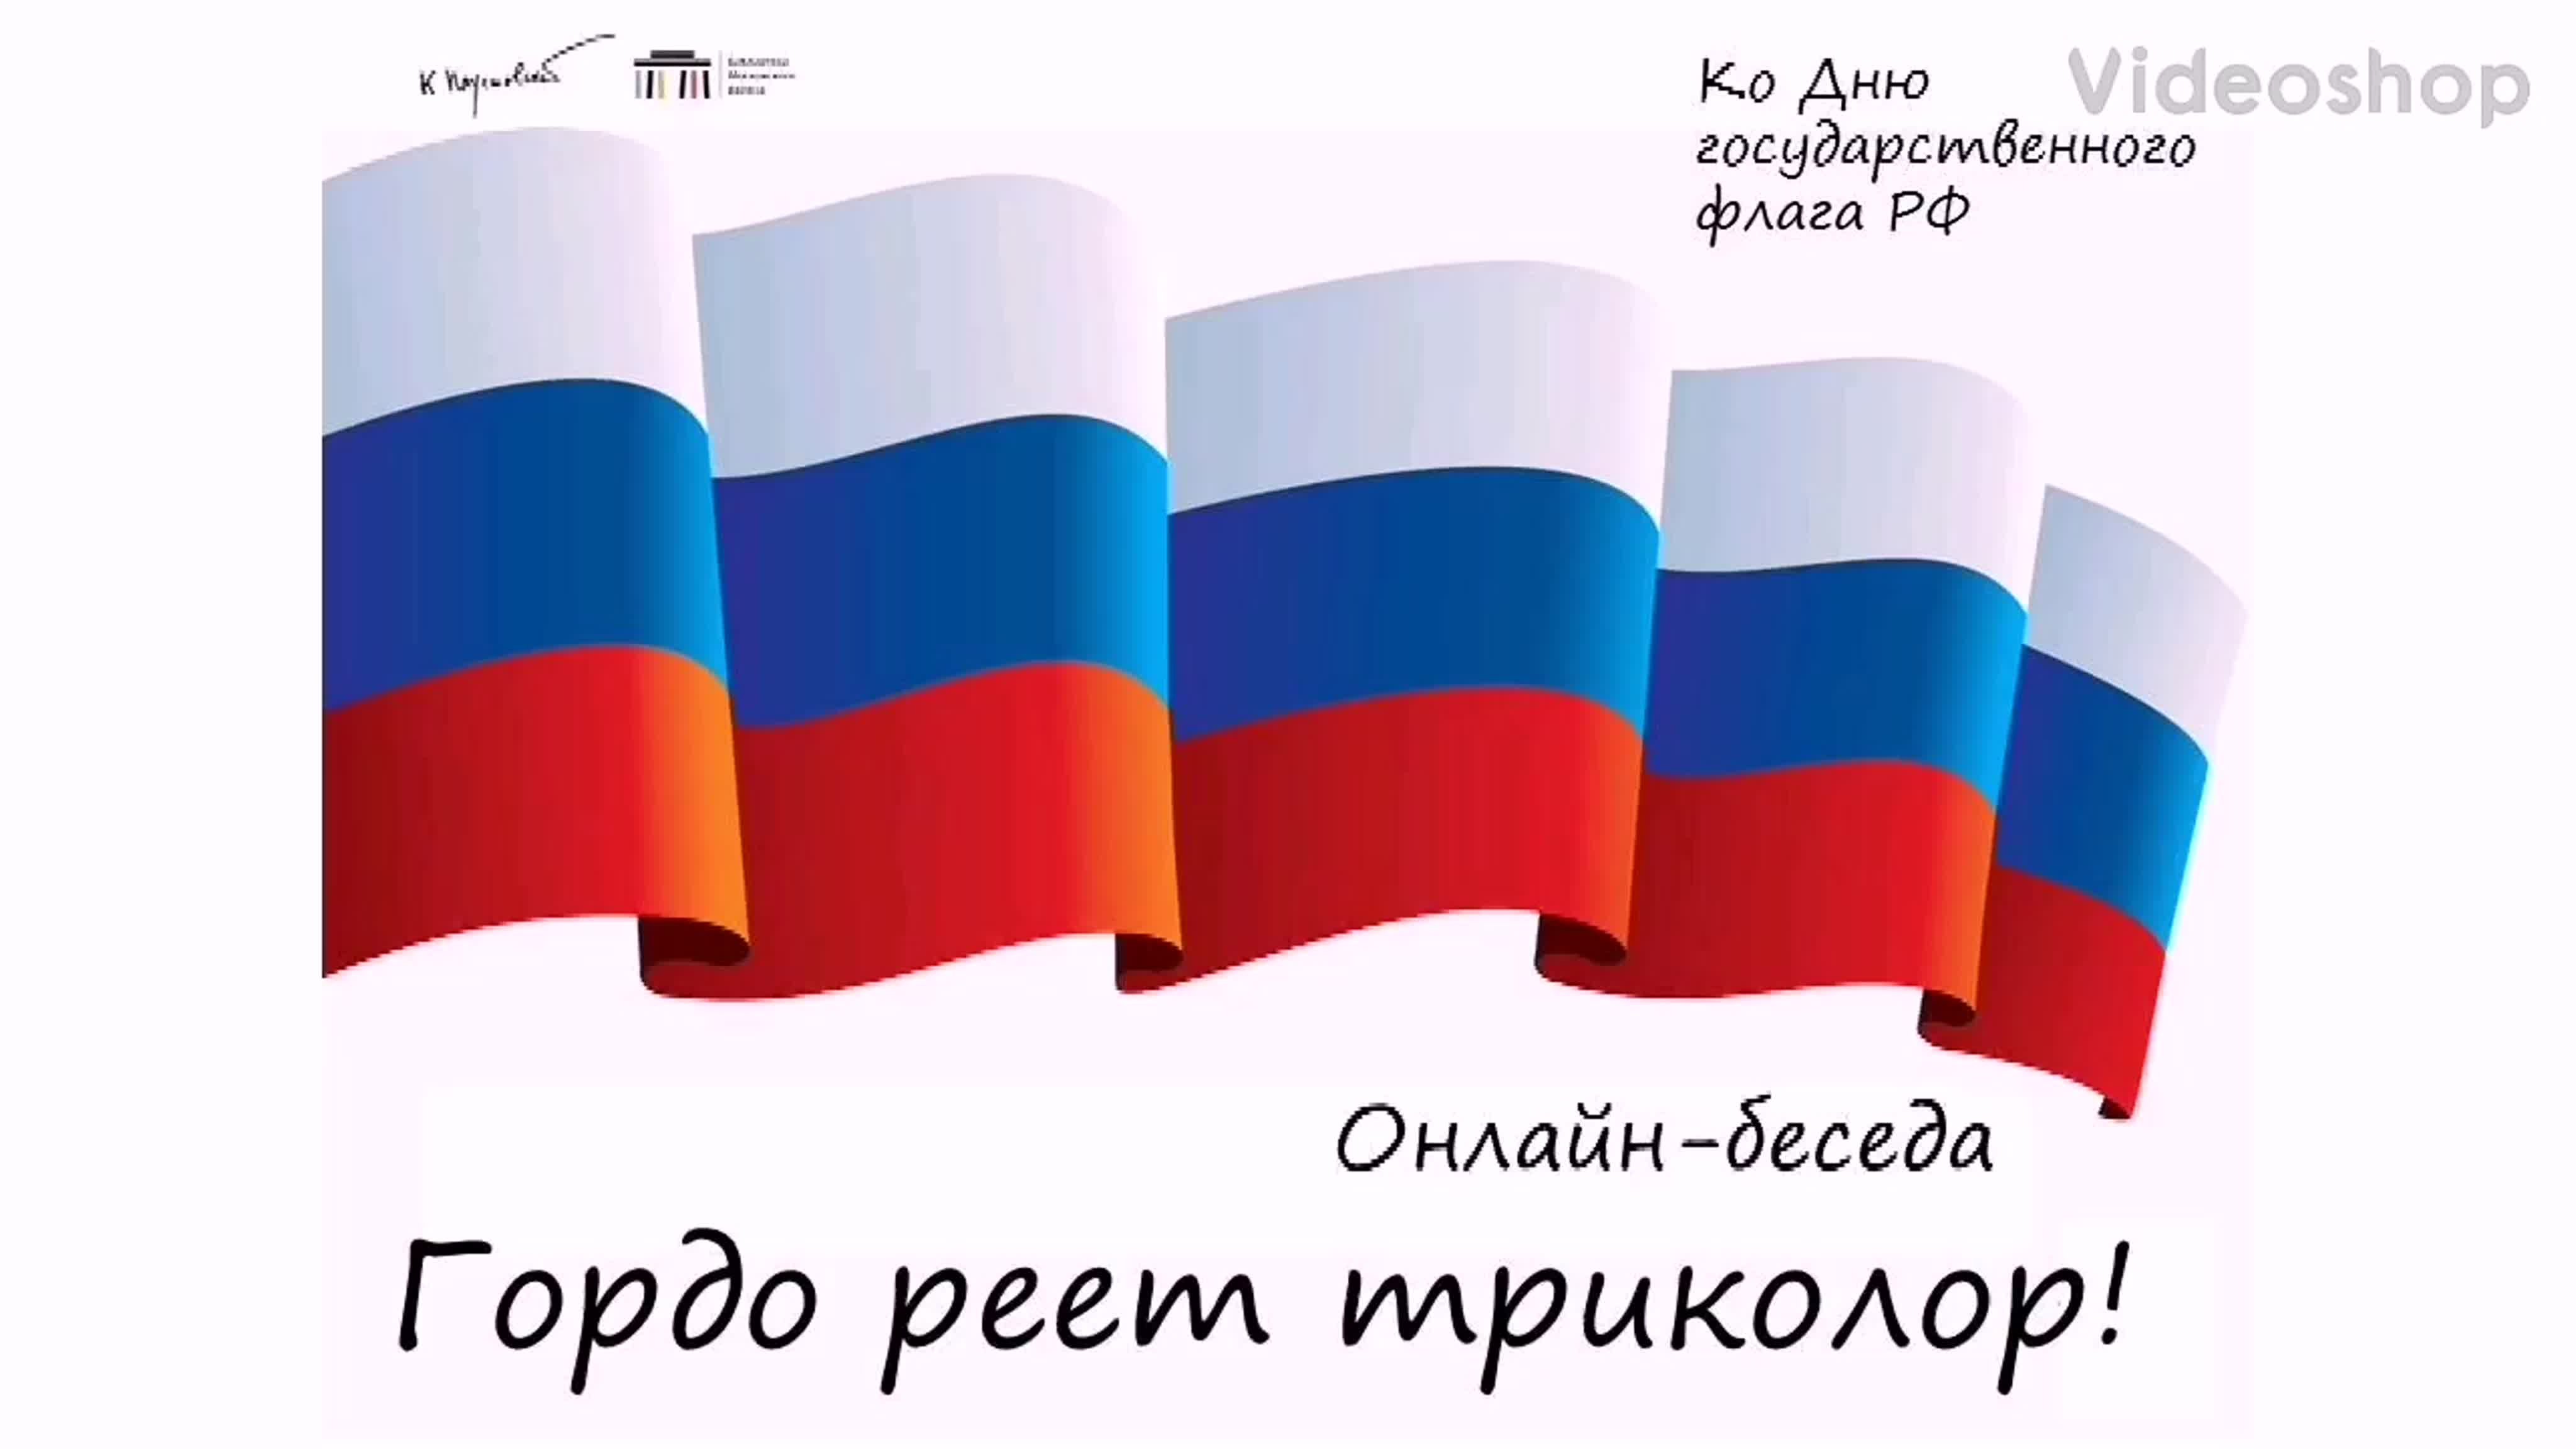 Российский флаг с надписью